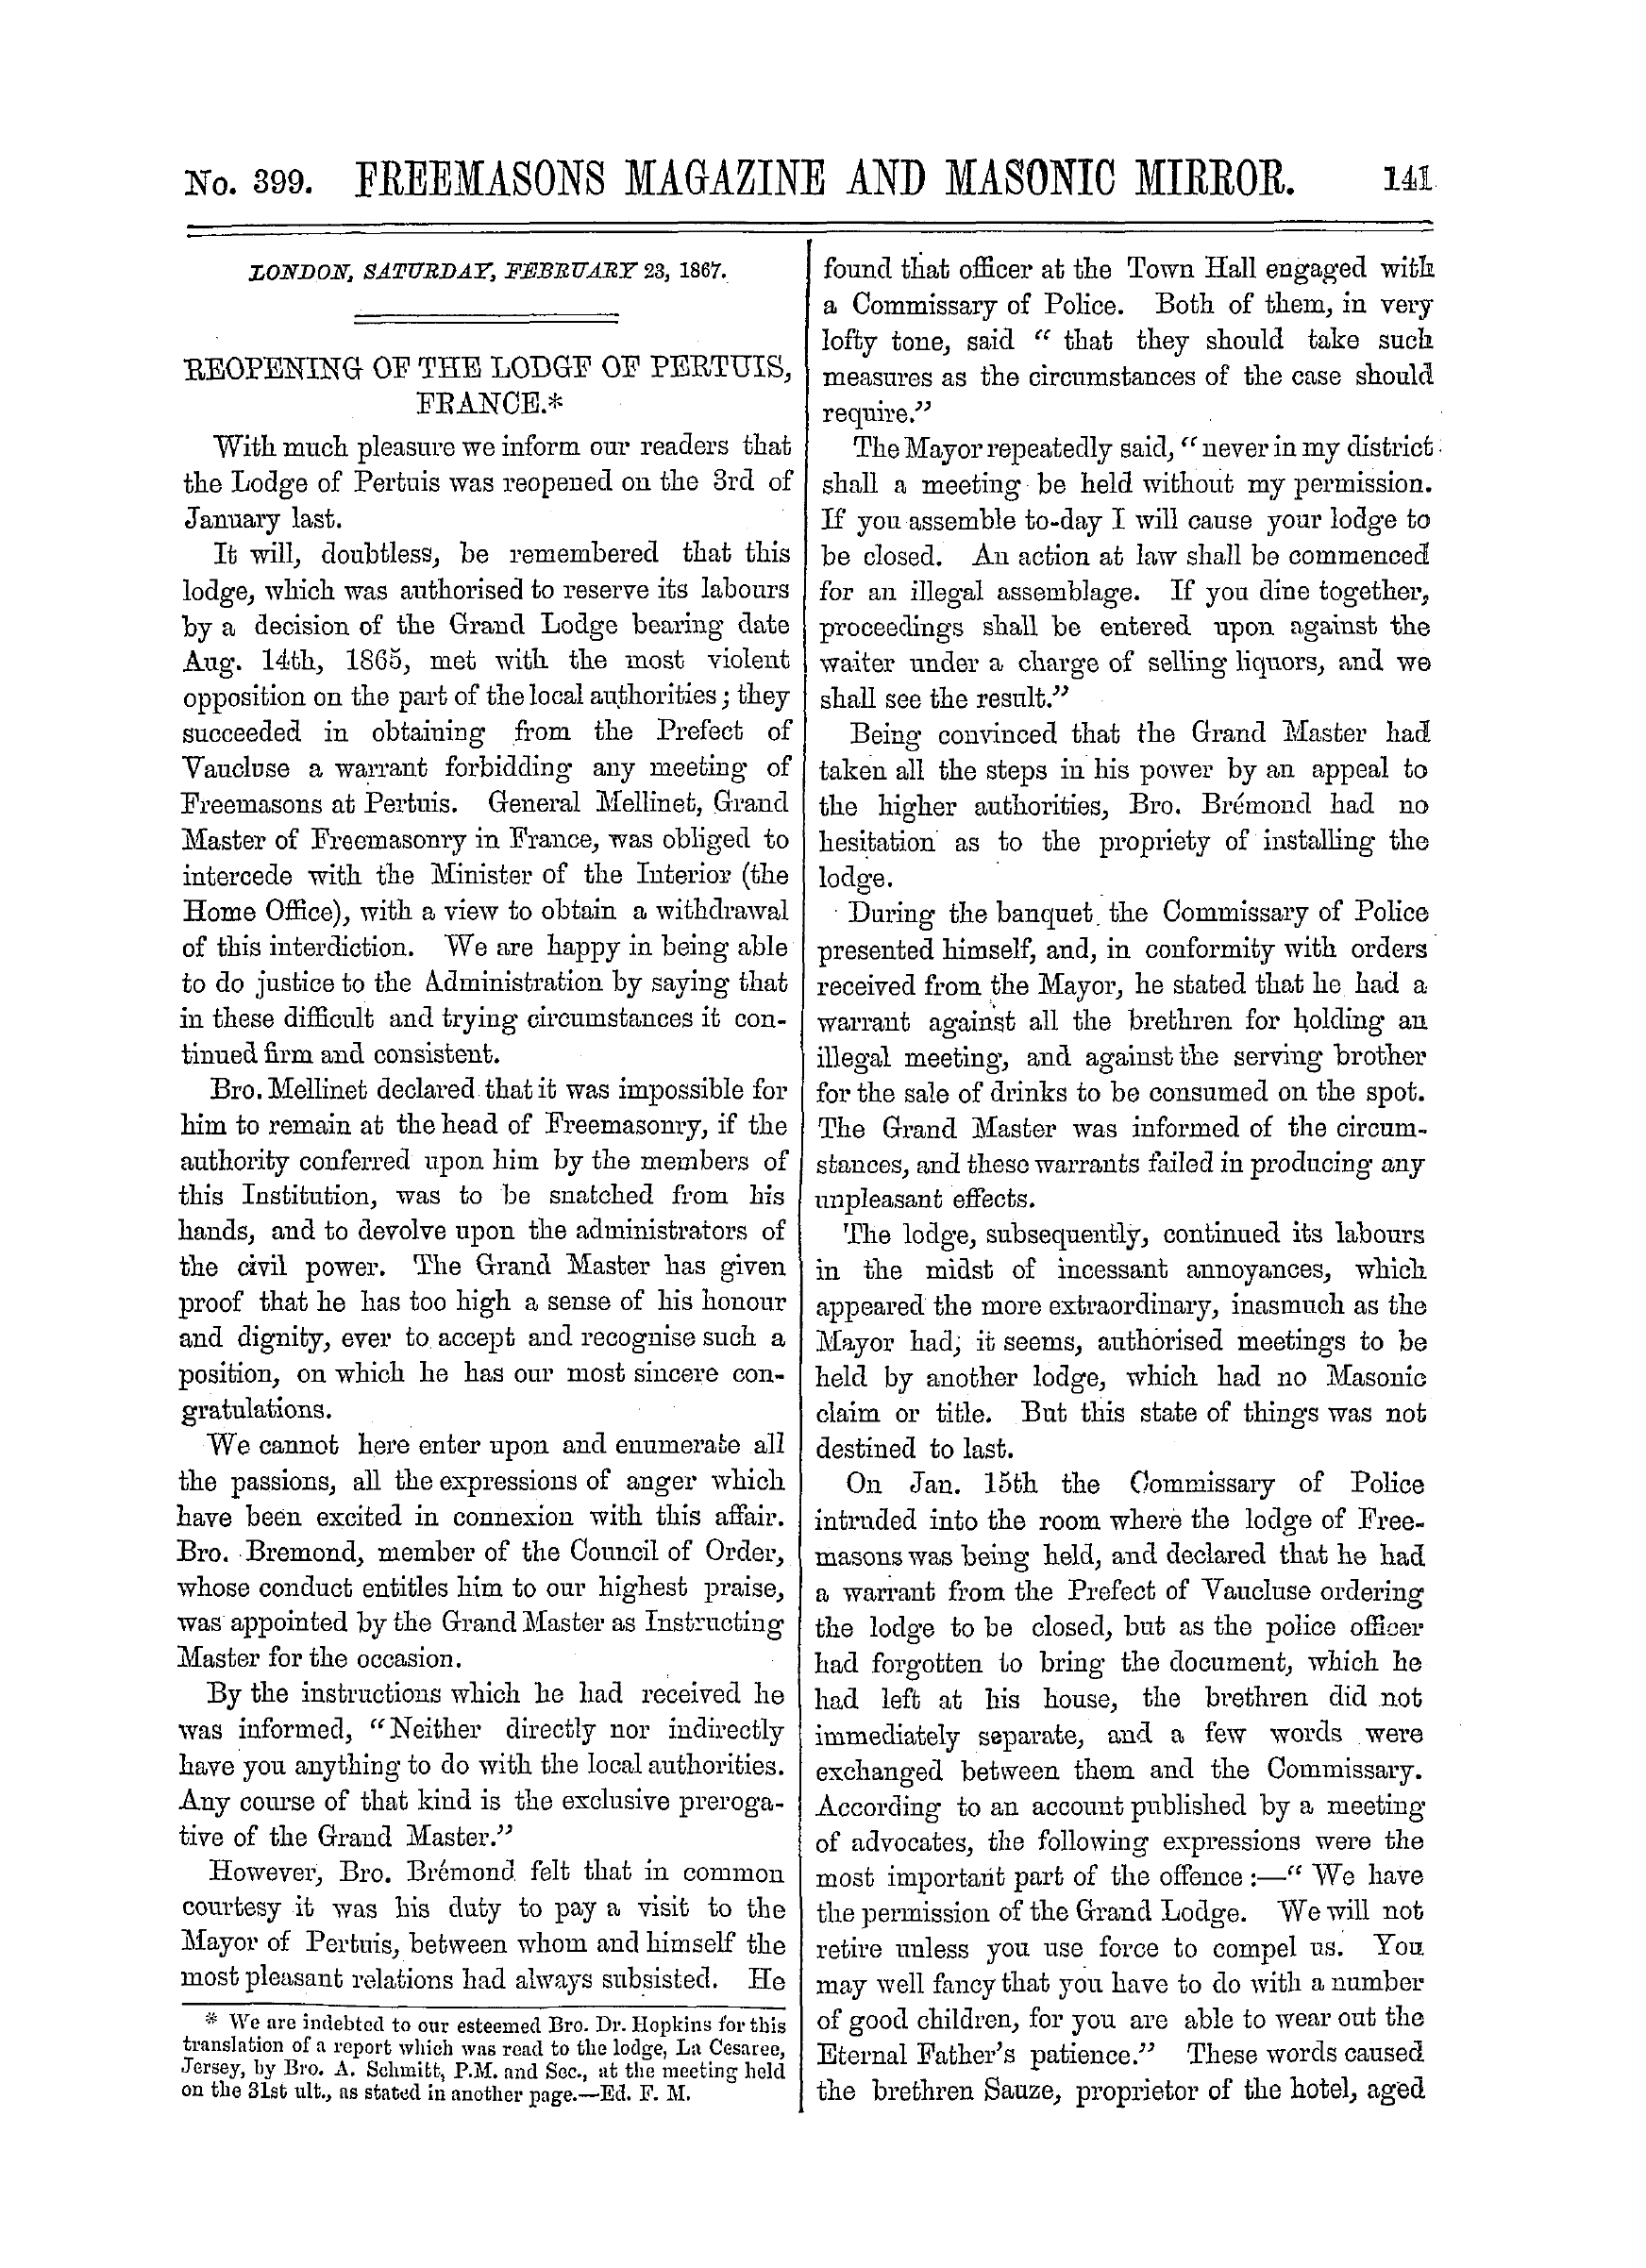 The Freemasons' Monthly Magazine: 1867-02-23: 1